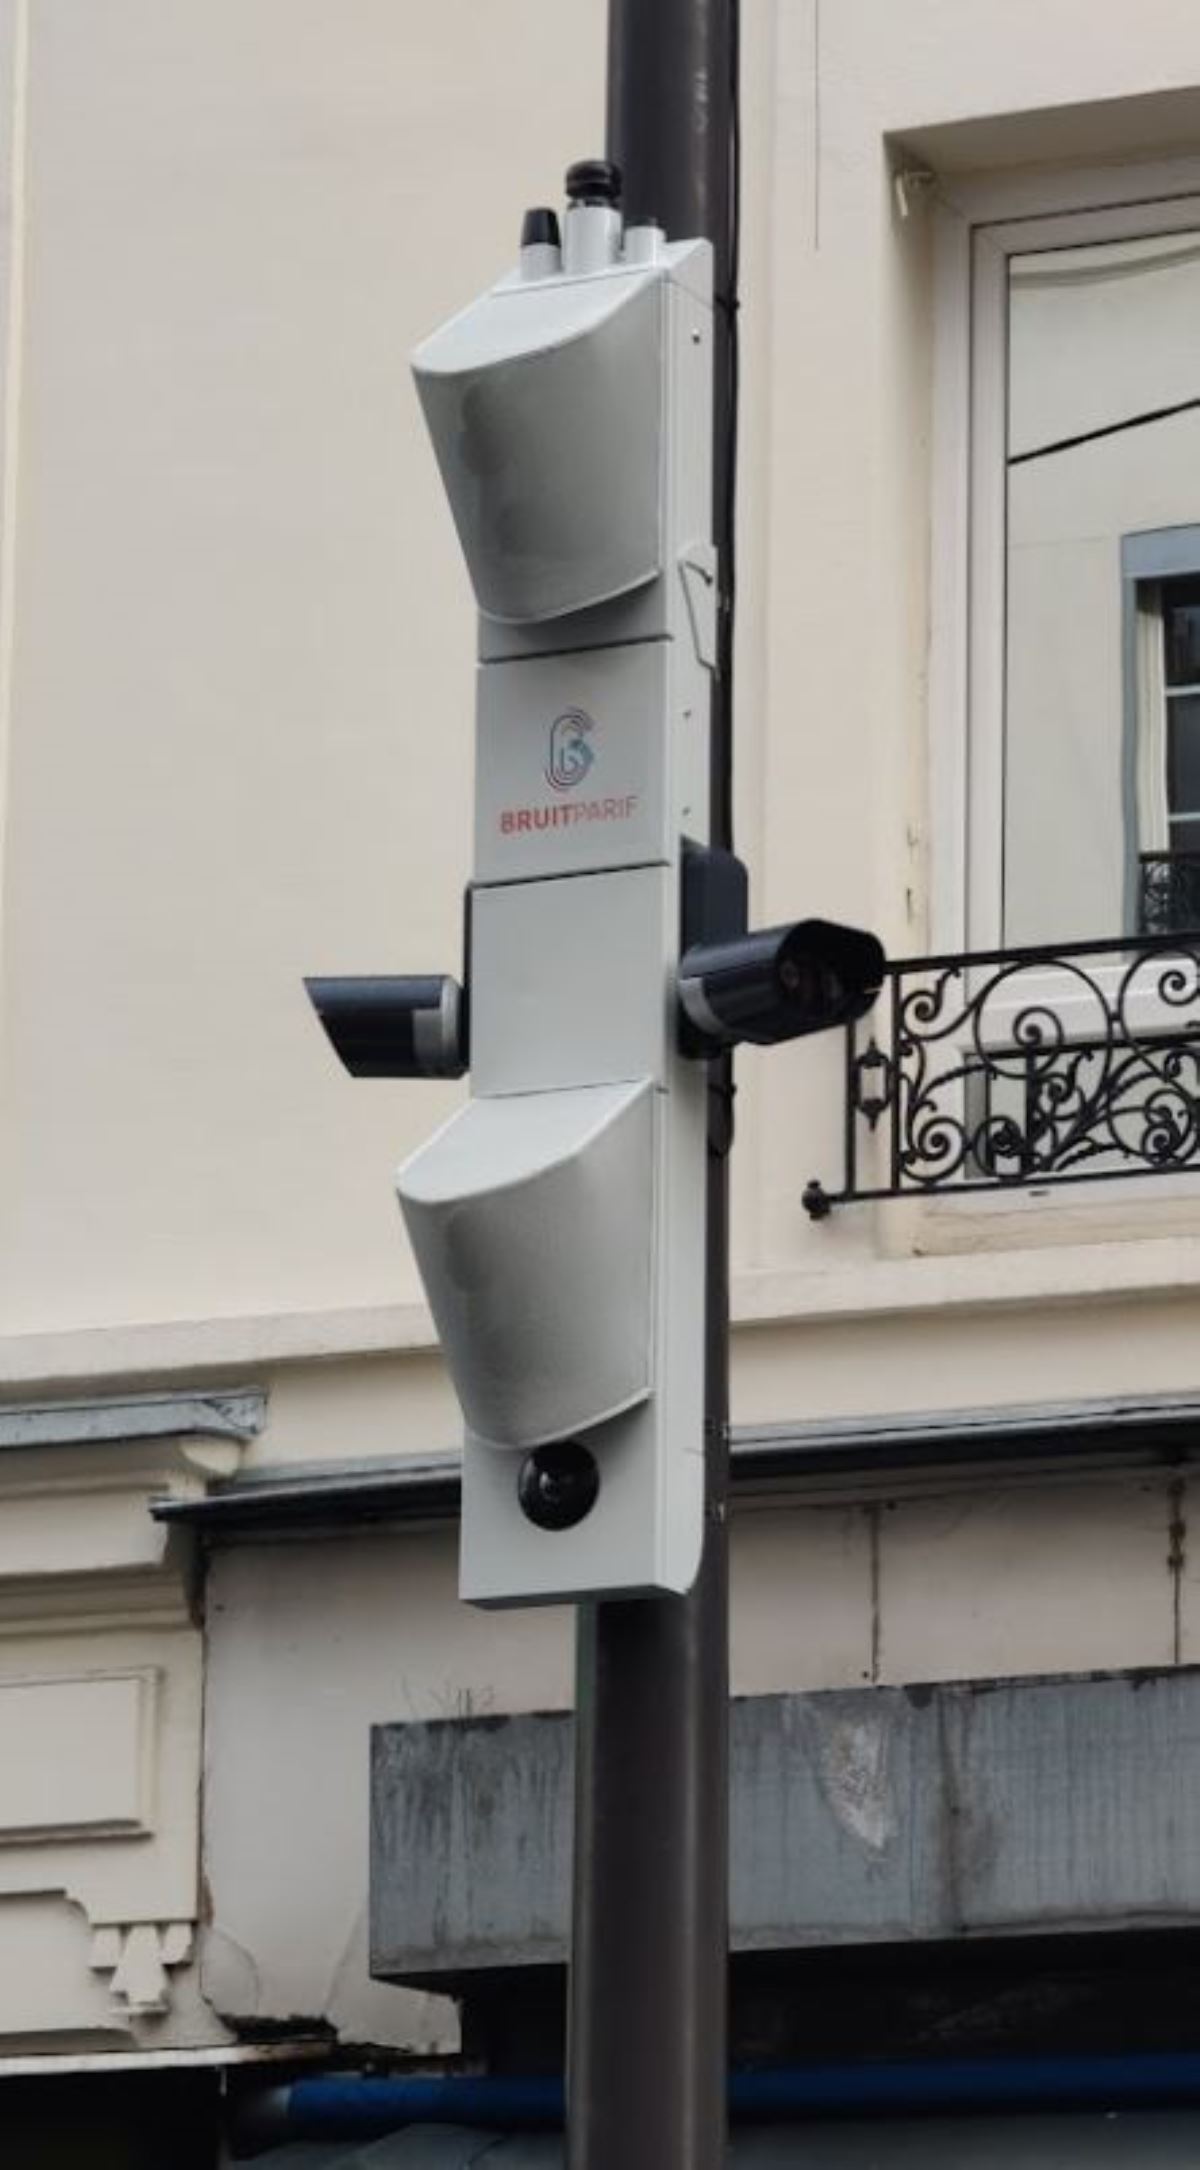 Paris’te ilk gürültü radarı kuruldu: Araçların gürültü emisyonları ölçülecek